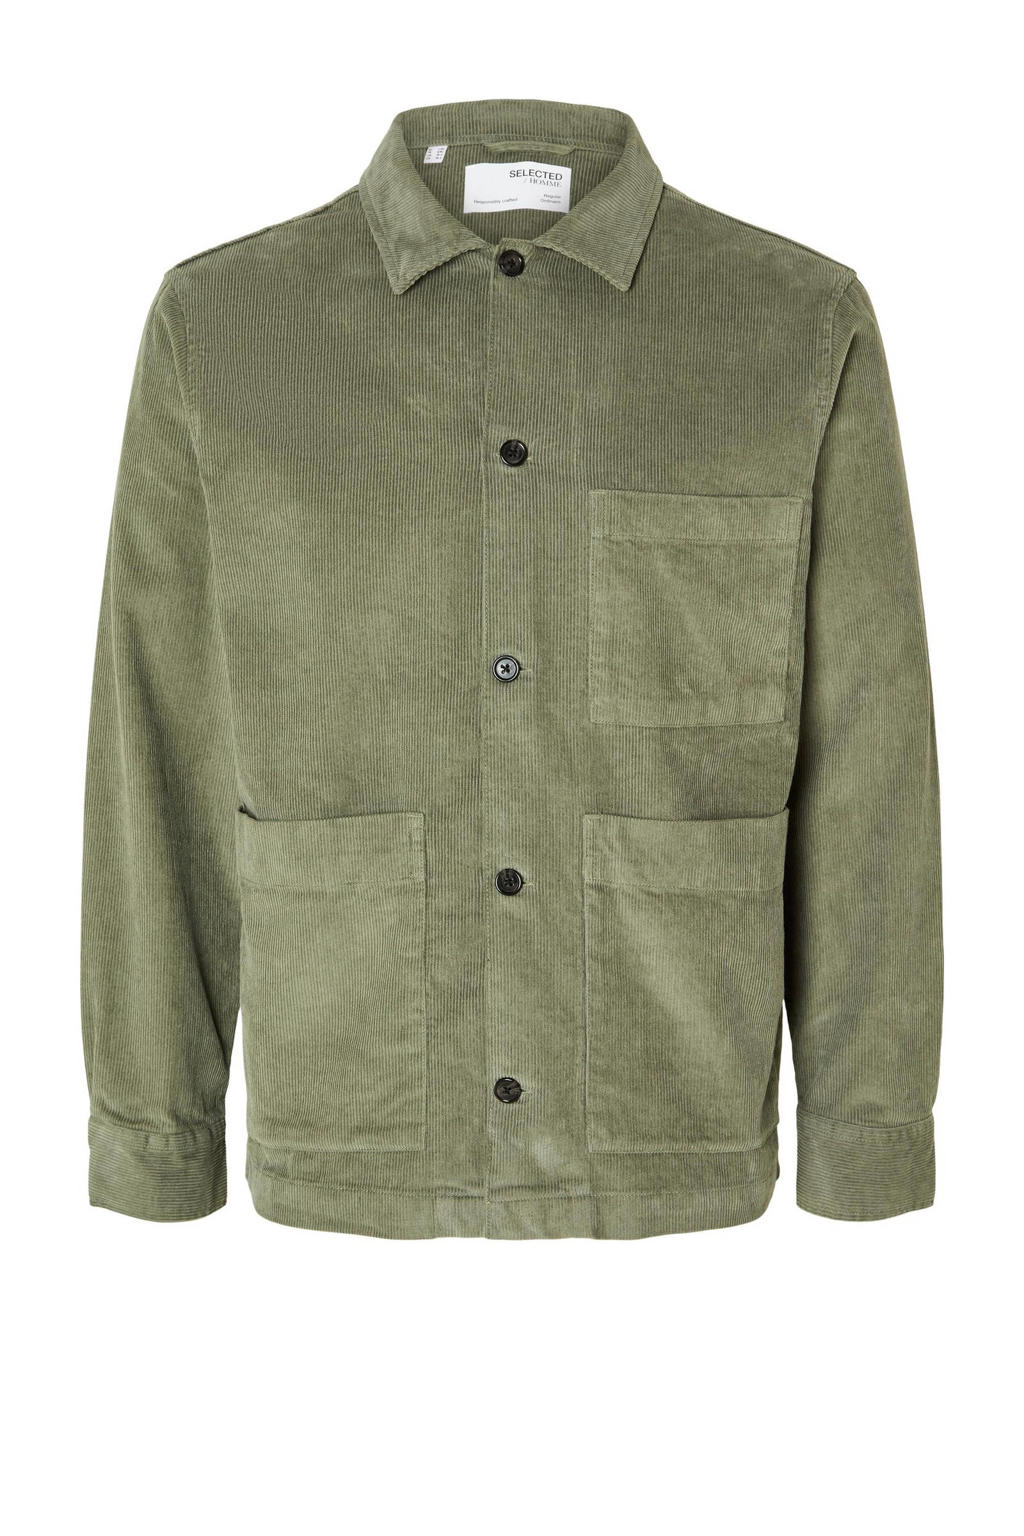 SELECTED HOMME corduroy oversized overshirt SLHLOOSETONY groen | Union ...